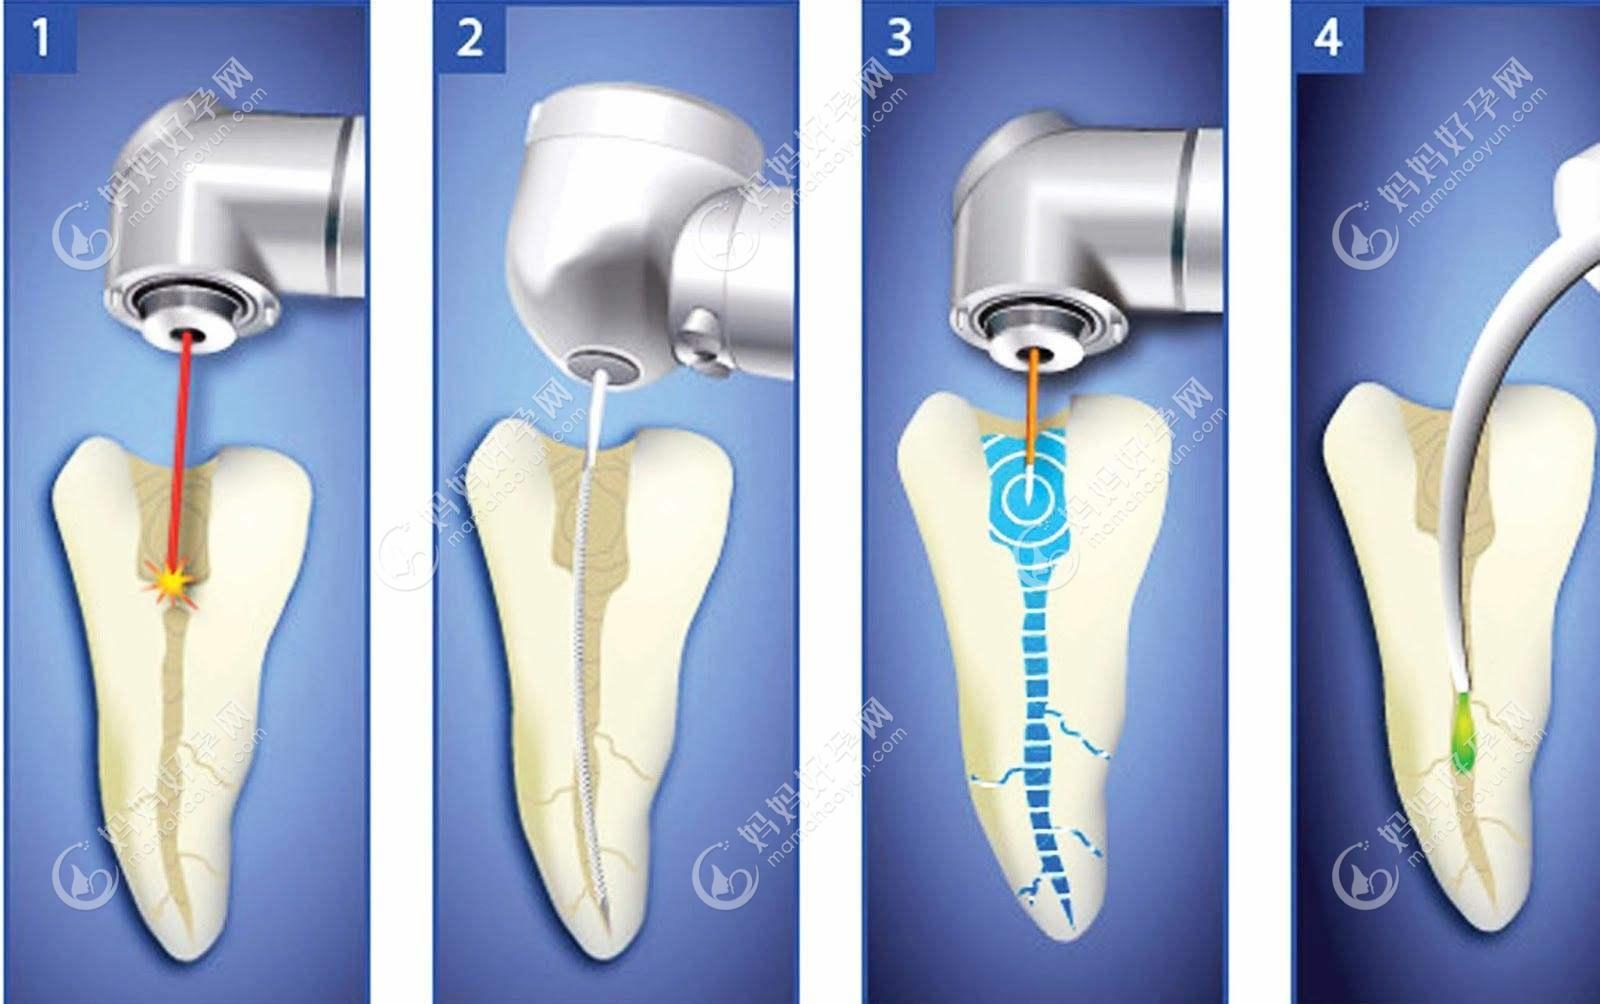 牙齿根管治疗步骤